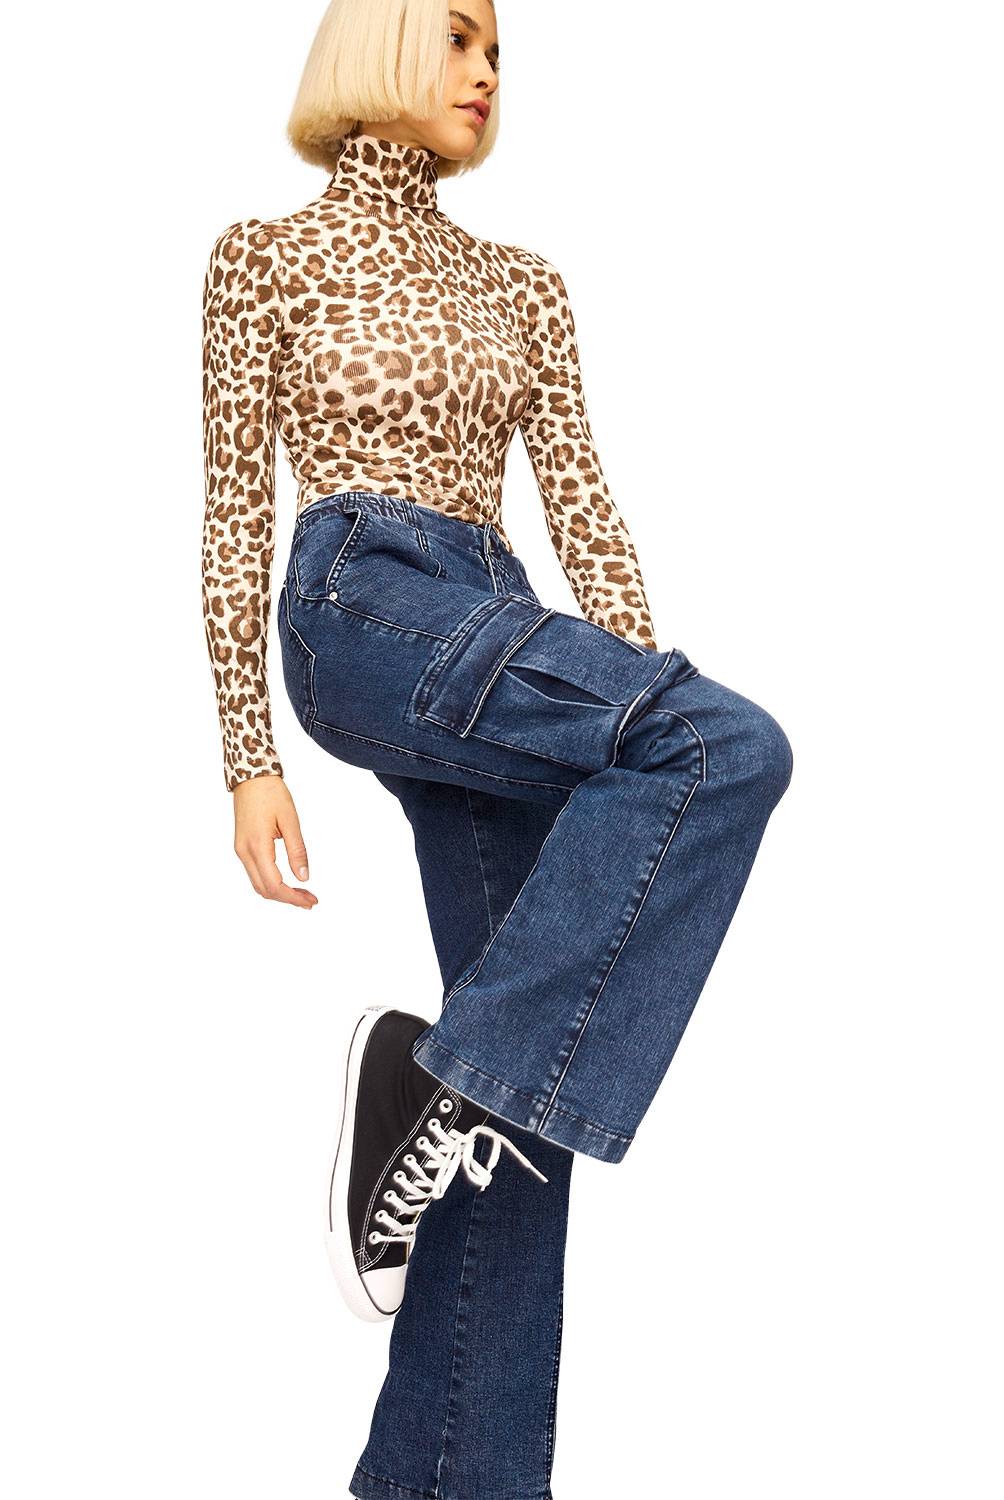 AMERICANINO - Americanino Jeans Cargo Tiro Medio Mujer